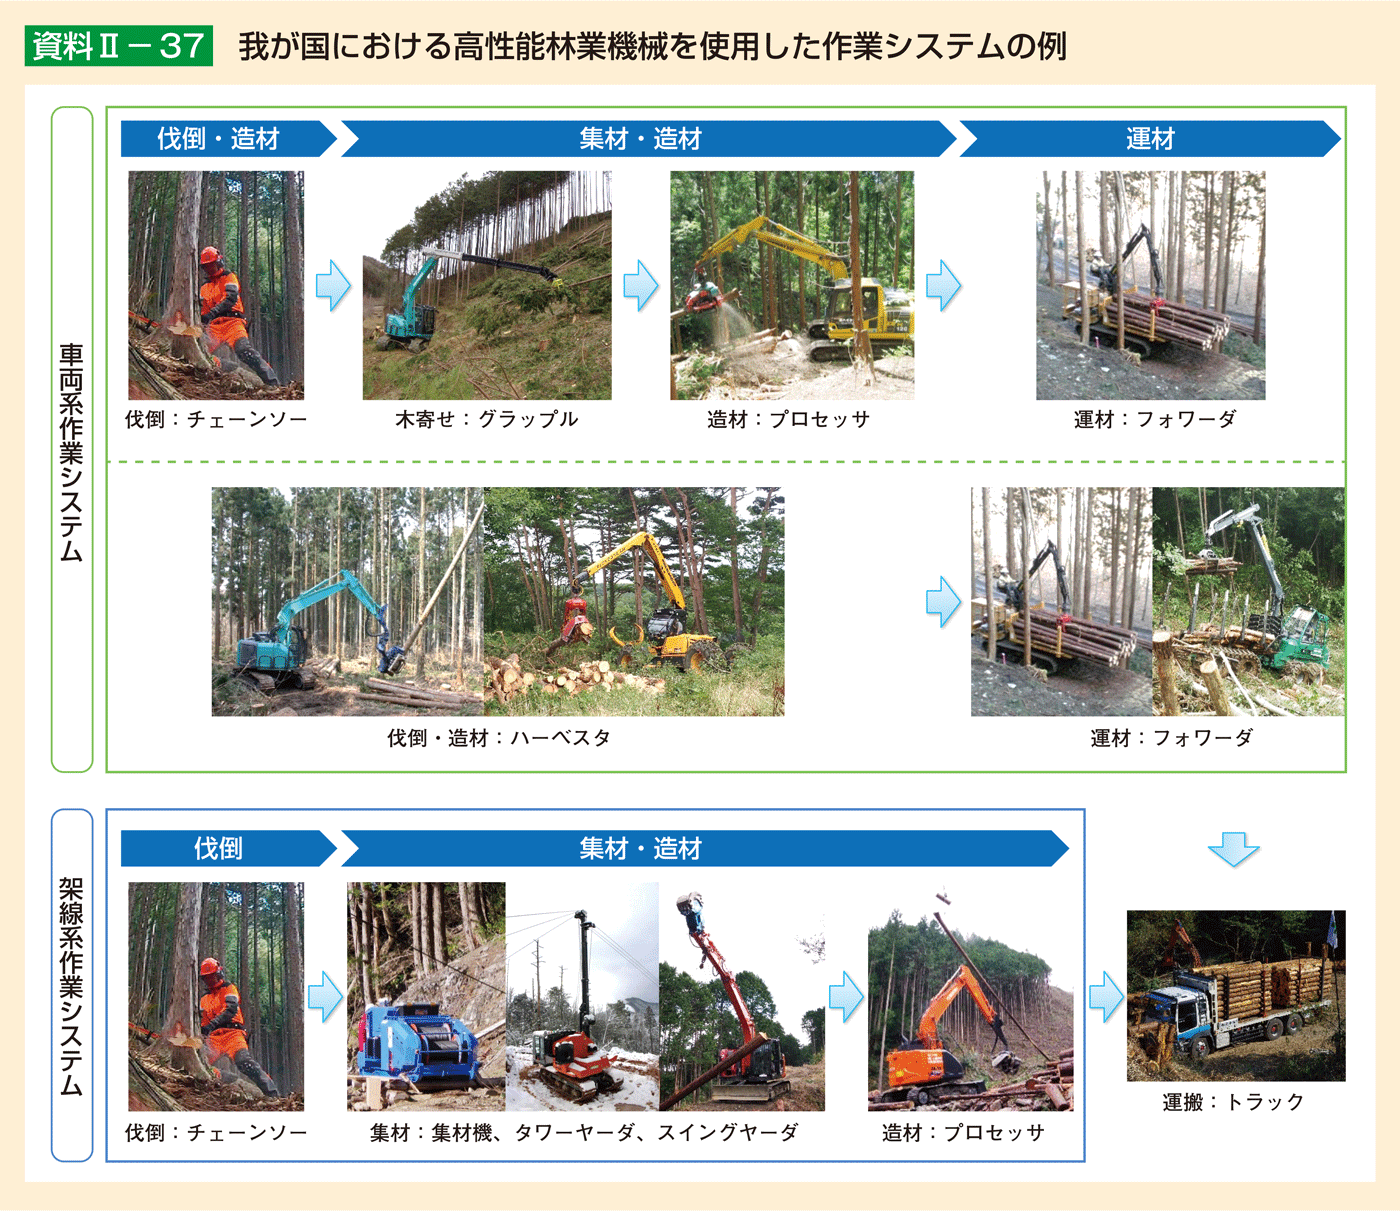 資料2-37 我が国における高性能林業機械を使用した作業システムの例